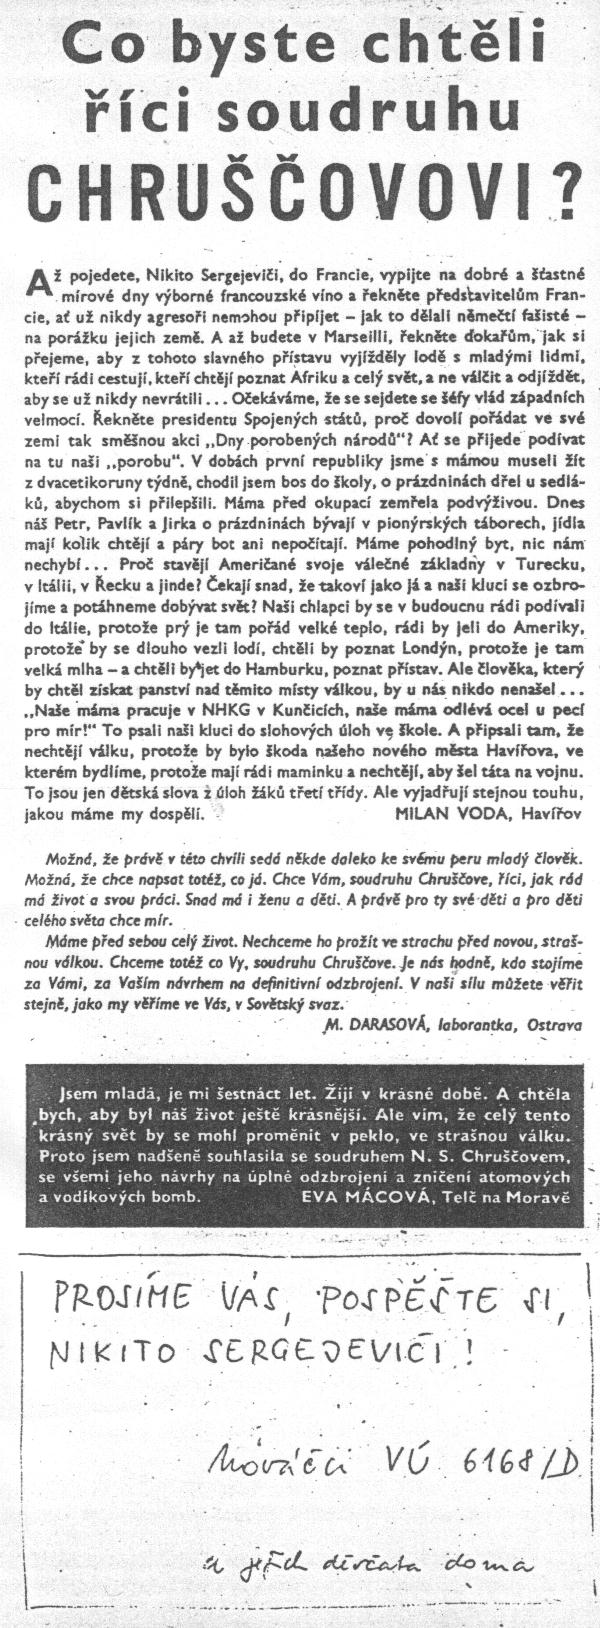 Co byste chtěli říct soudruhu Chruščovovi? Mladý svět, 1959, č.48/1